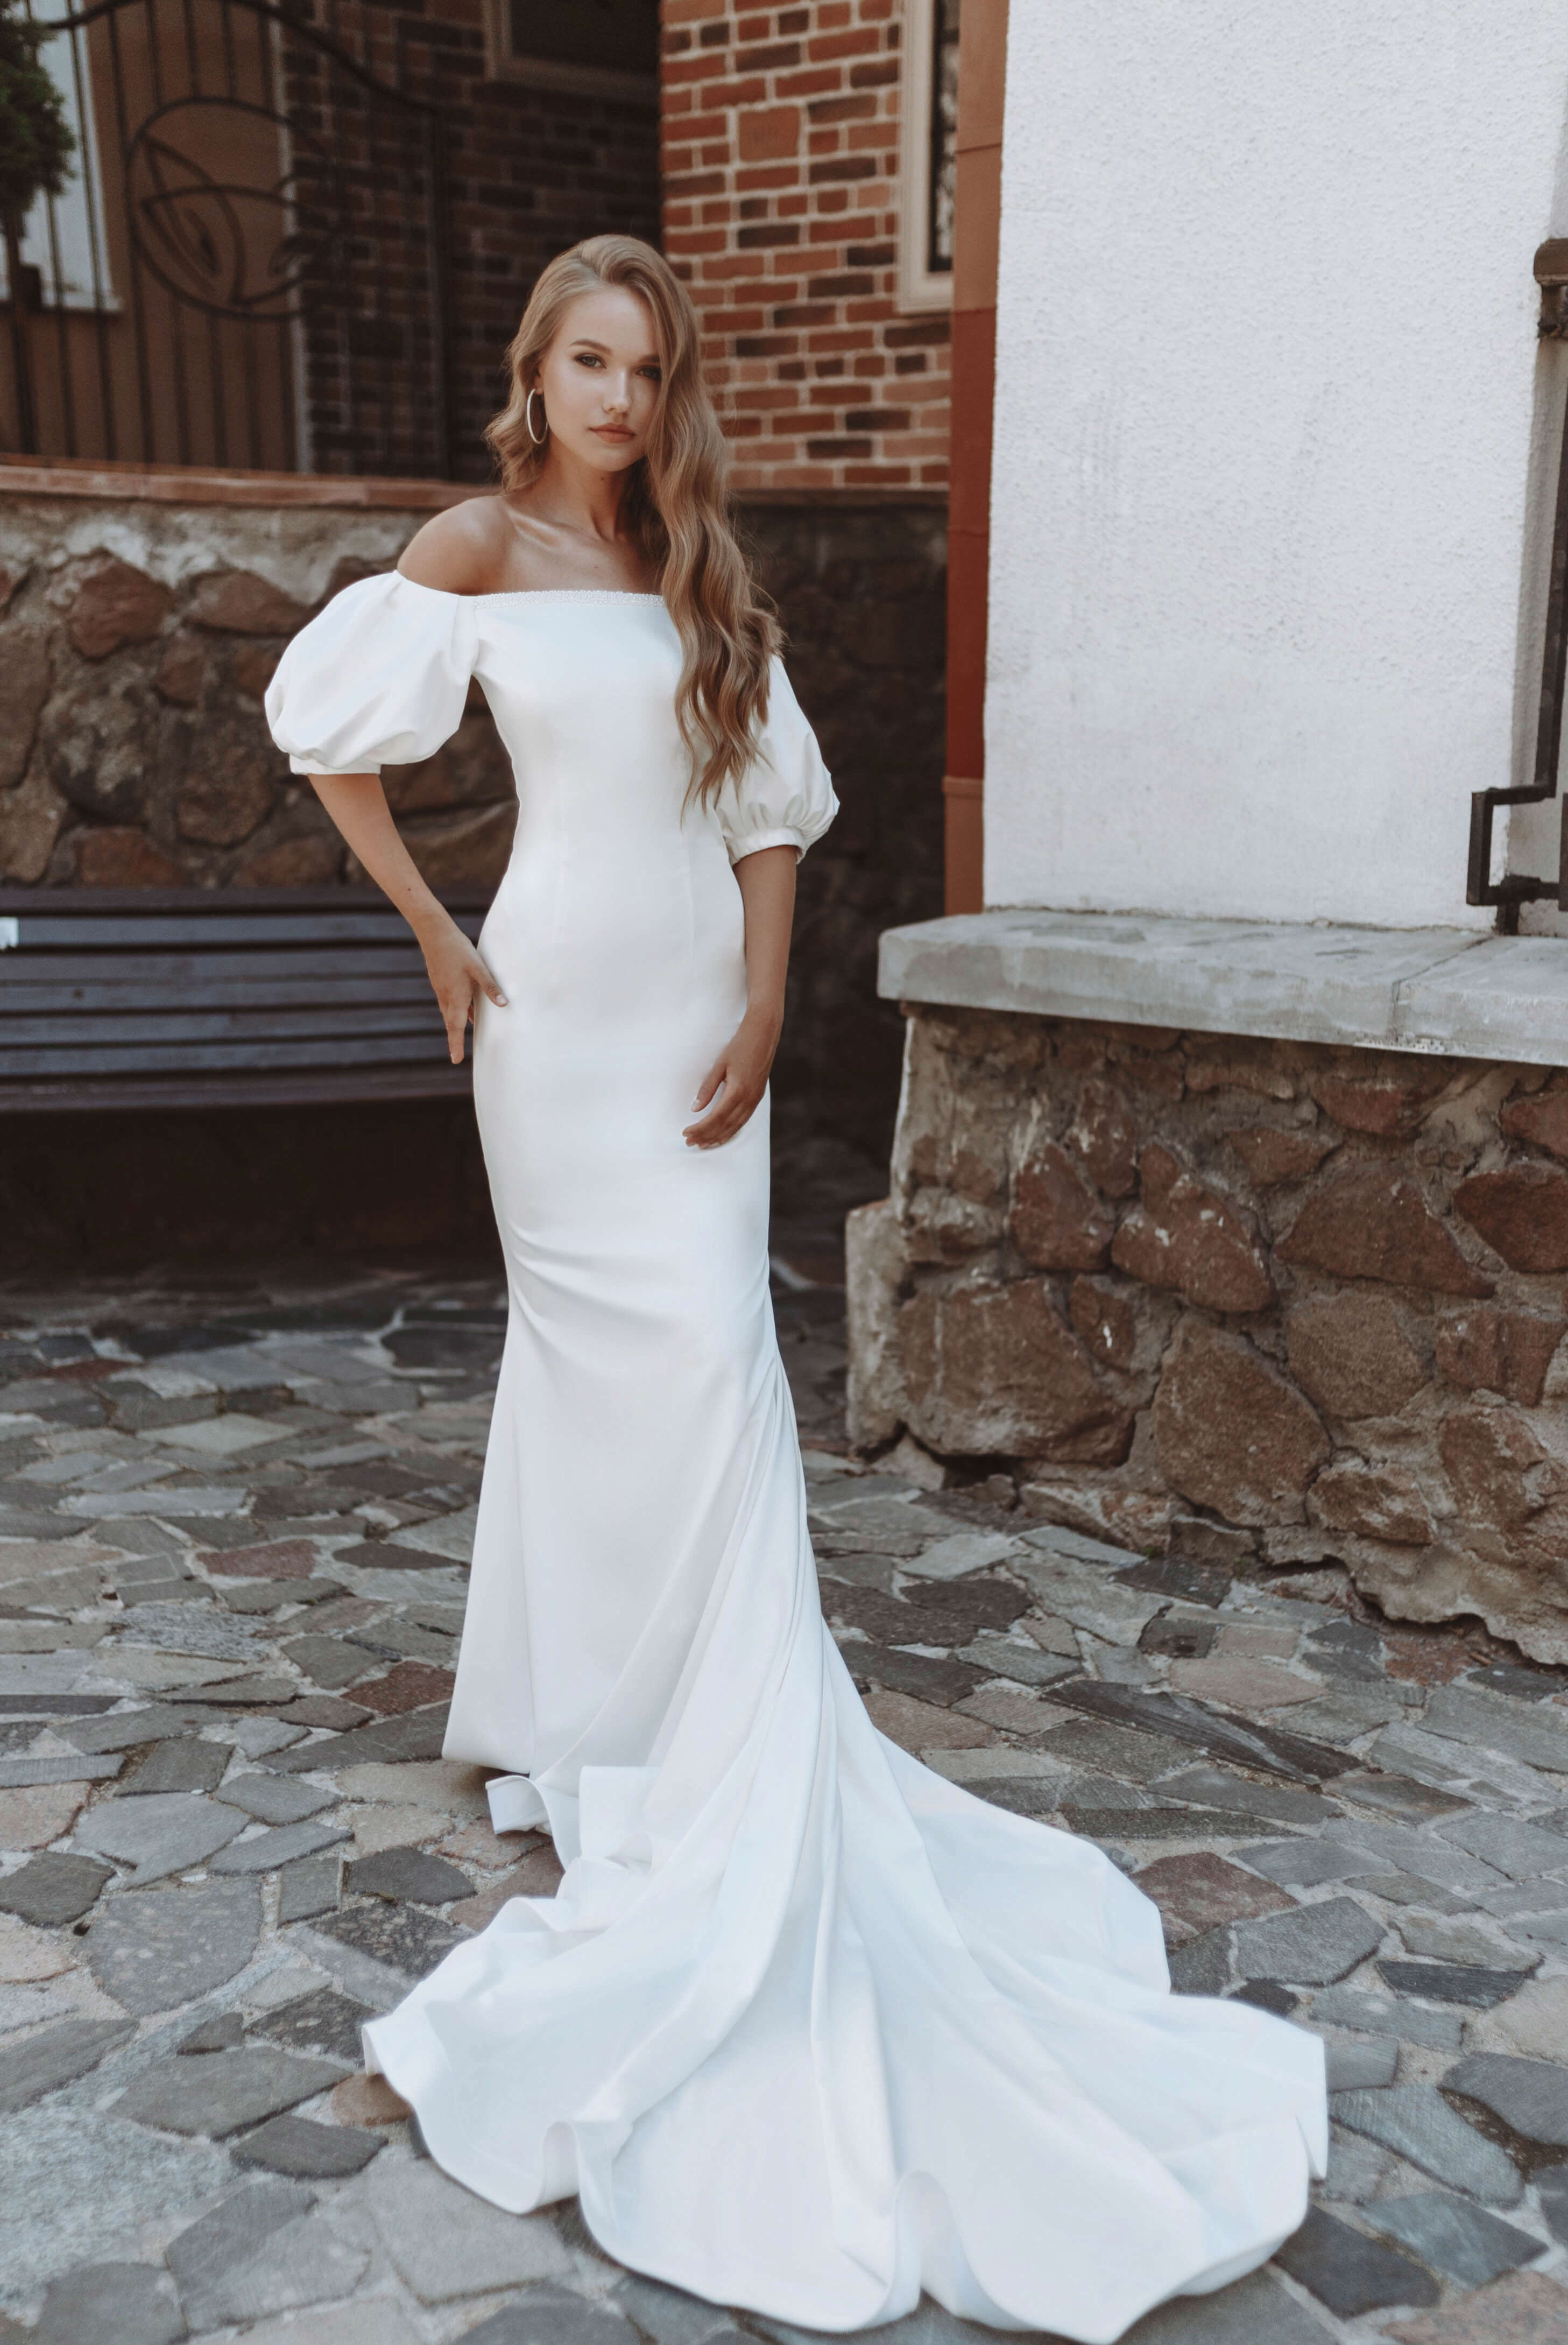 Купить свадебное платье «Ода» Анже Этуаль из коллекции Леди Перл 2021 года в салоне «Мэри Трюфель»